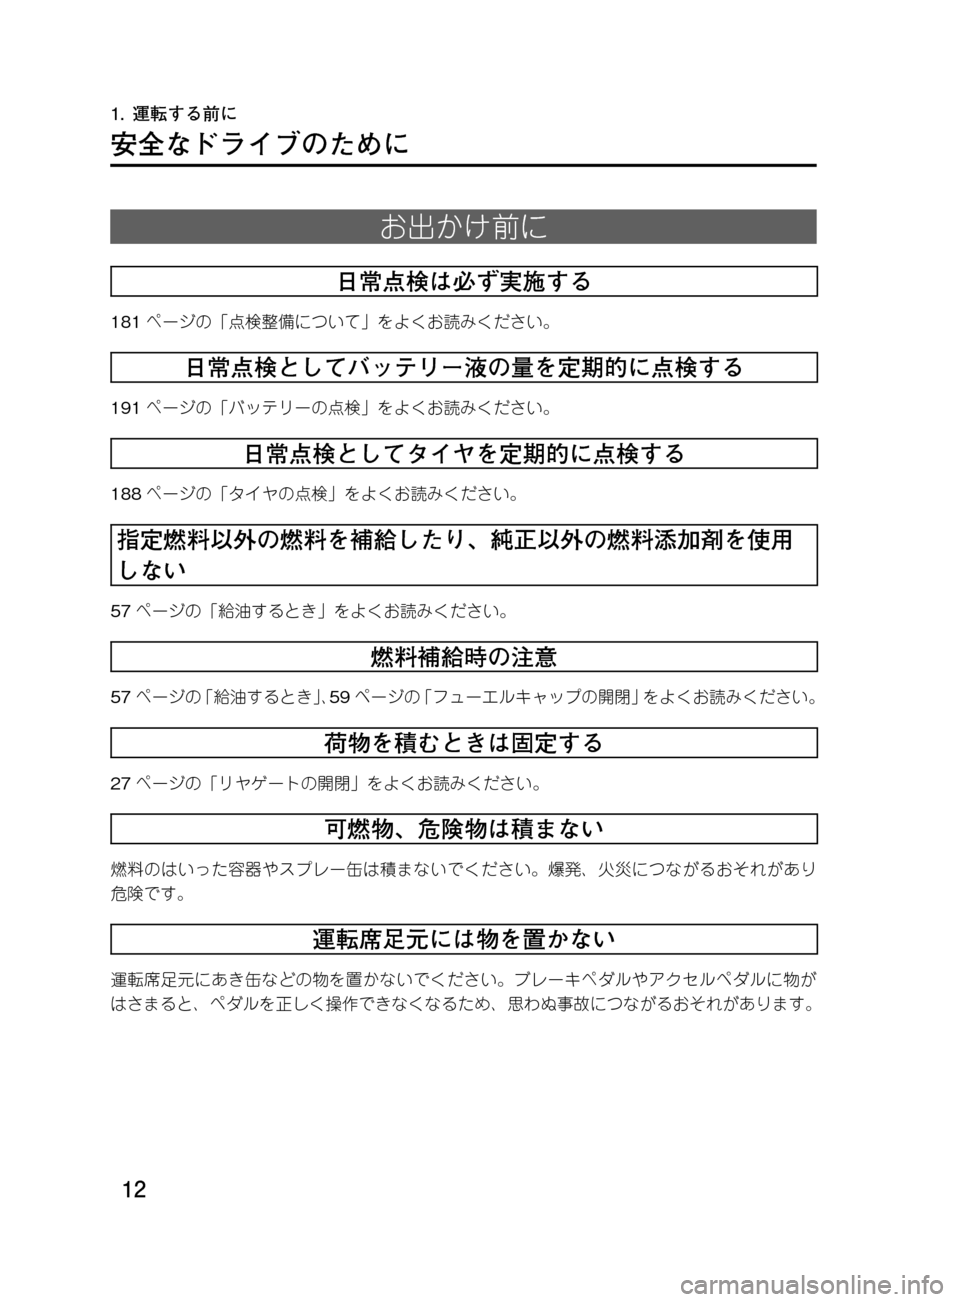 MAZDA MODEL DEMIO 2011  デミオ｜取扱説明書 (in Japanese) ��
��P�S�N��/�P���% 